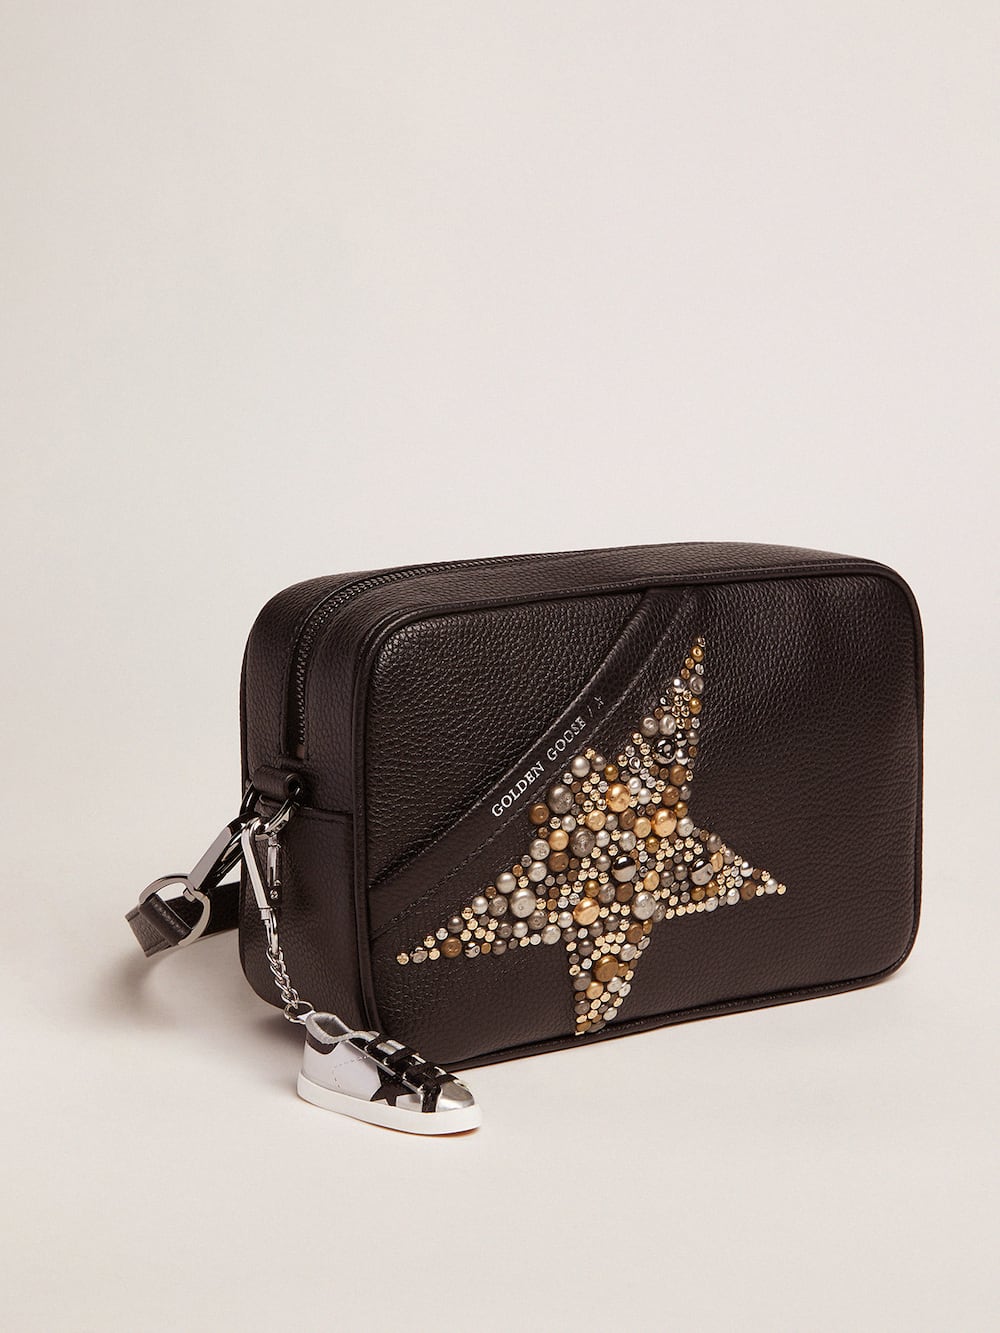 Golden Goose - Tasche Star Bag in Schwarz aus gewalktem Leder mit nietenbesetztem Stern in 